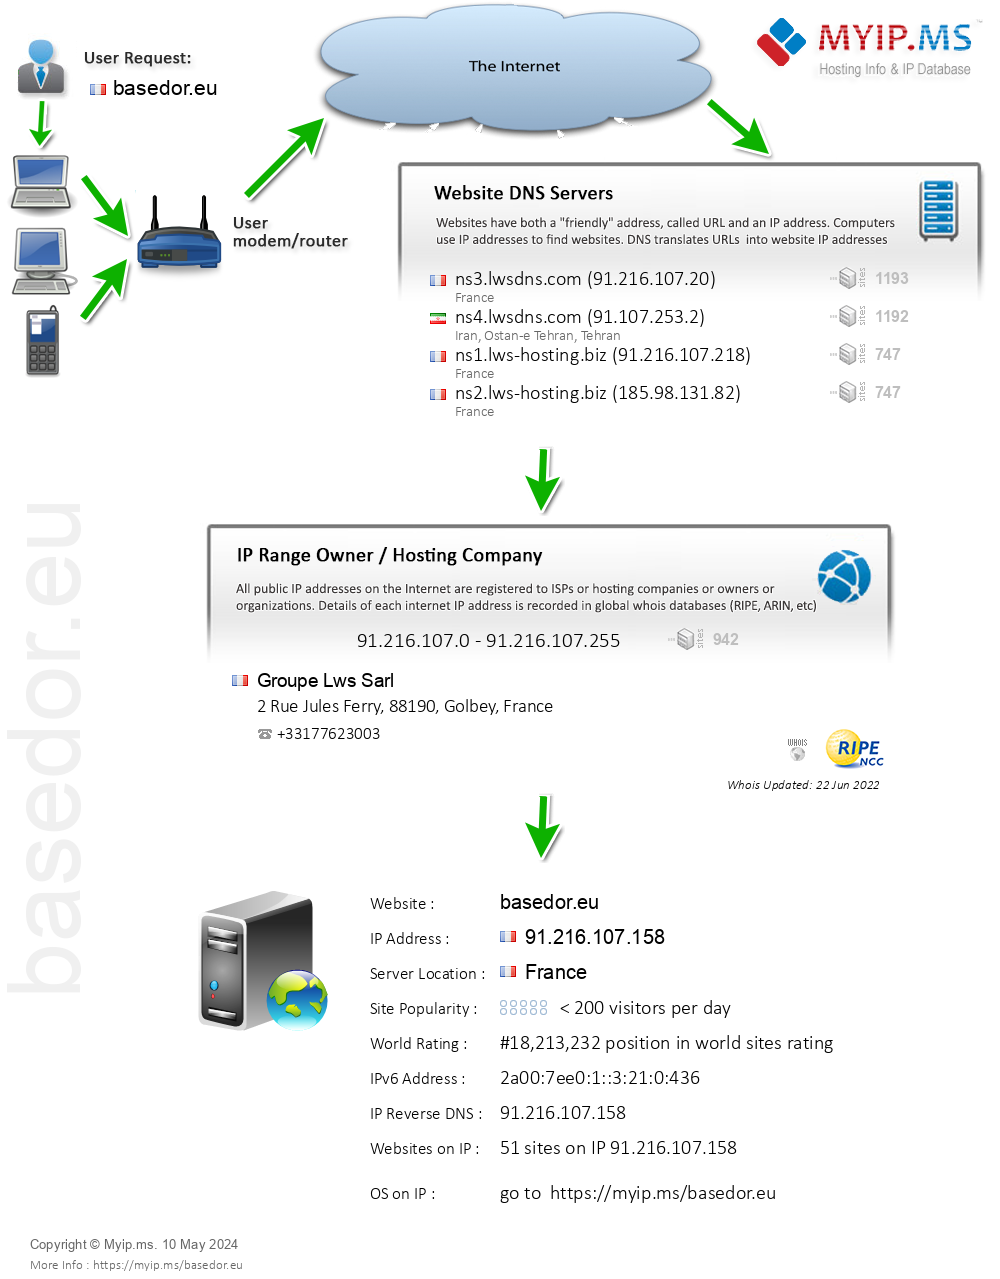 Basedor.eu - Website Hosting Visual IP Diagram